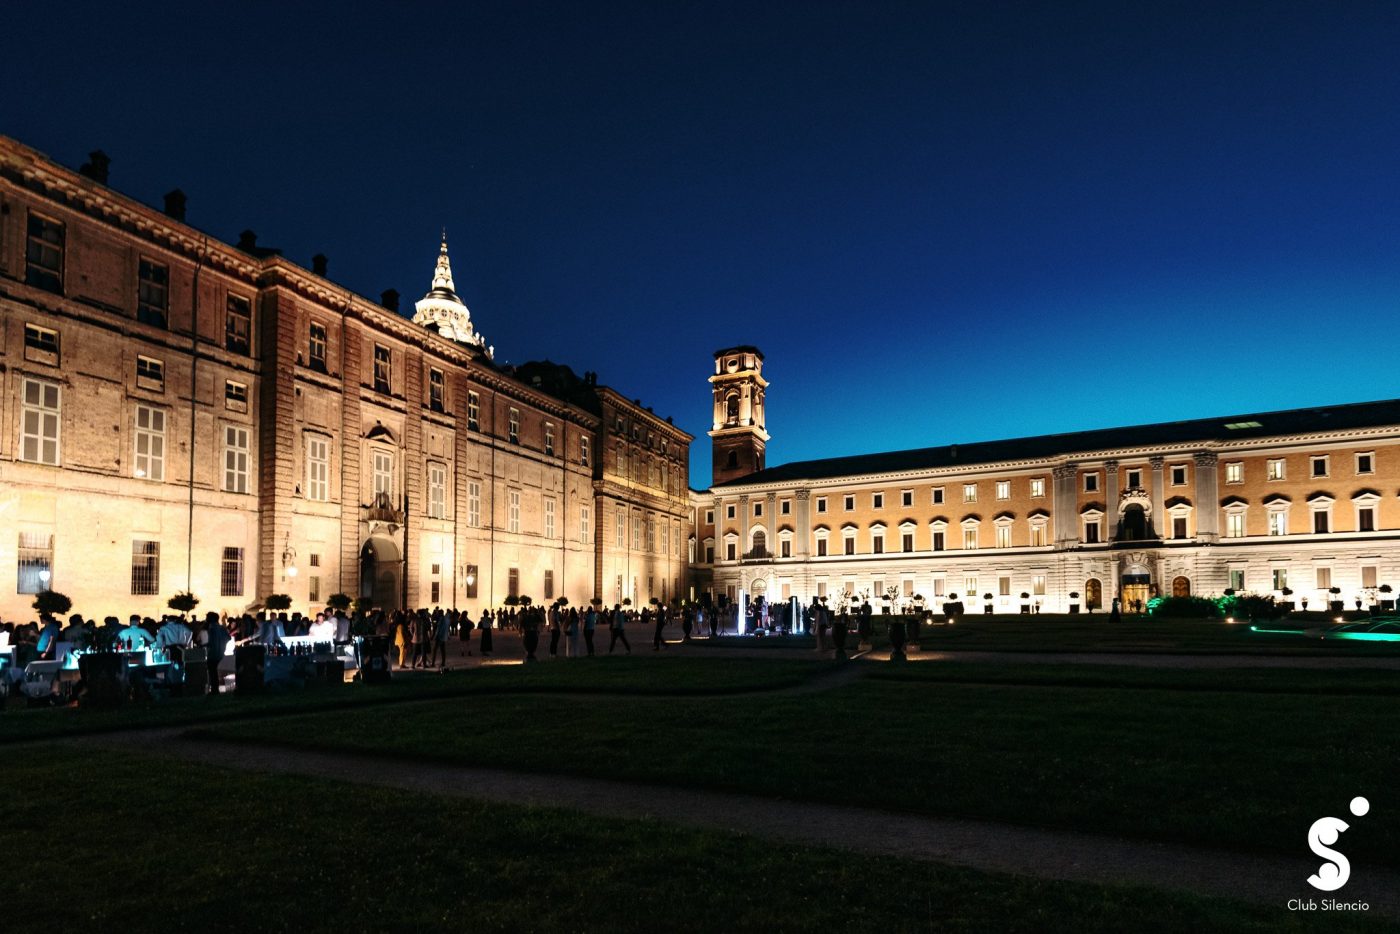 Una notte a Palazzo Reale 09/06/2022